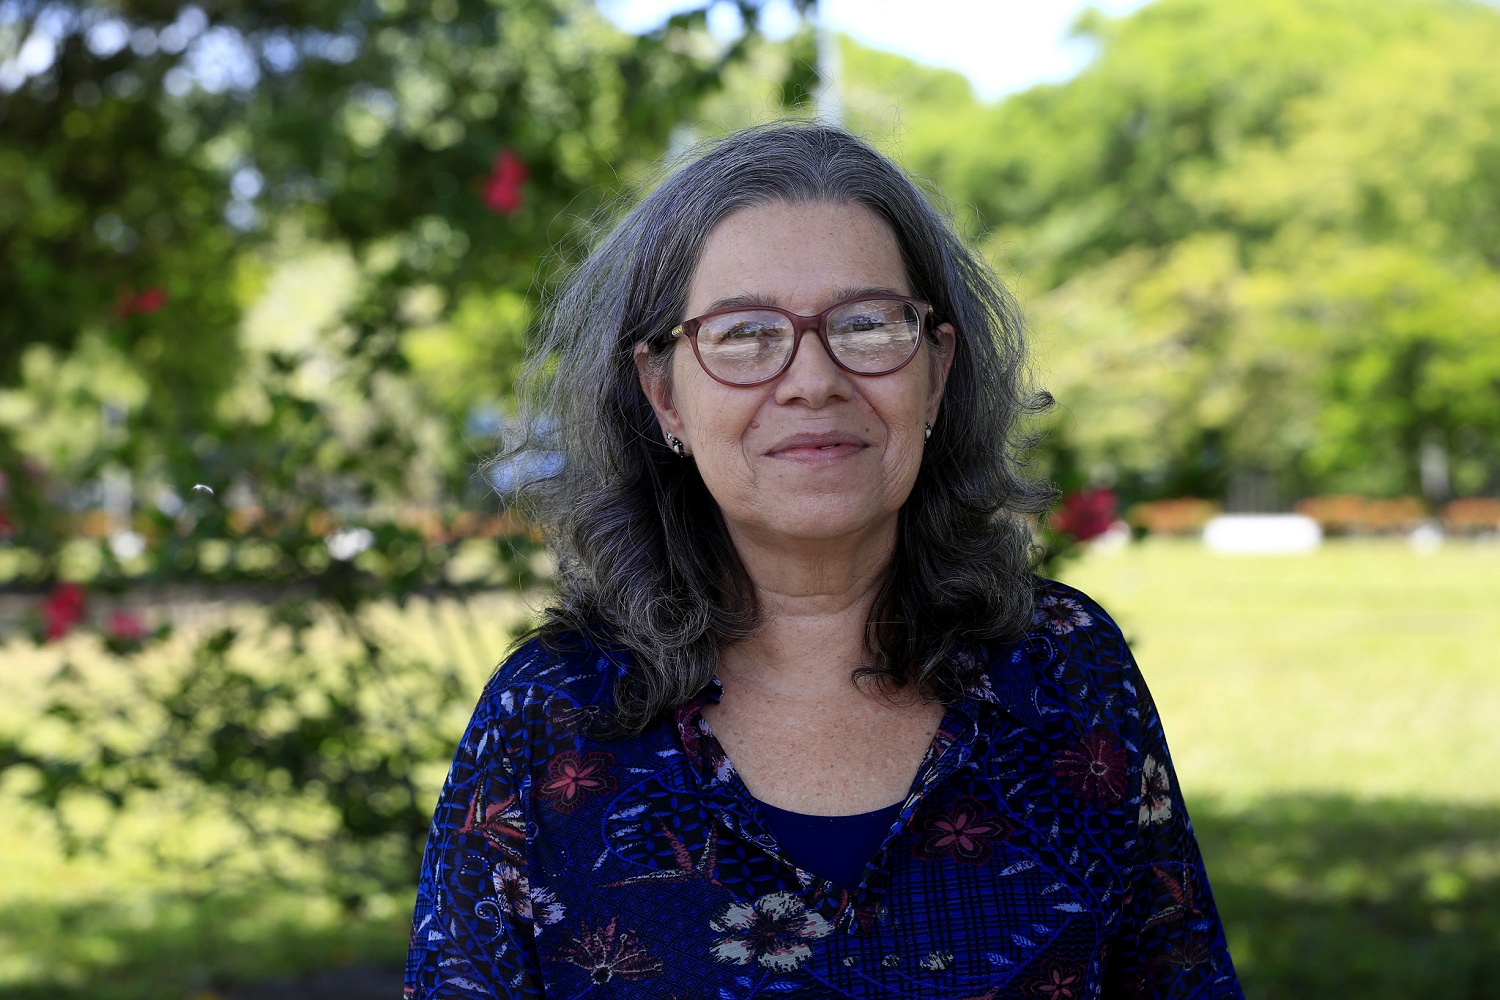 A professora Susana Carvalho é umas das autoras do trabalho "Novos parâmetros acústico-articulatórios para a avaliação objetiva da fala na doença de Parkinson", que ficou em 2º lugar na área de “Linguagem”